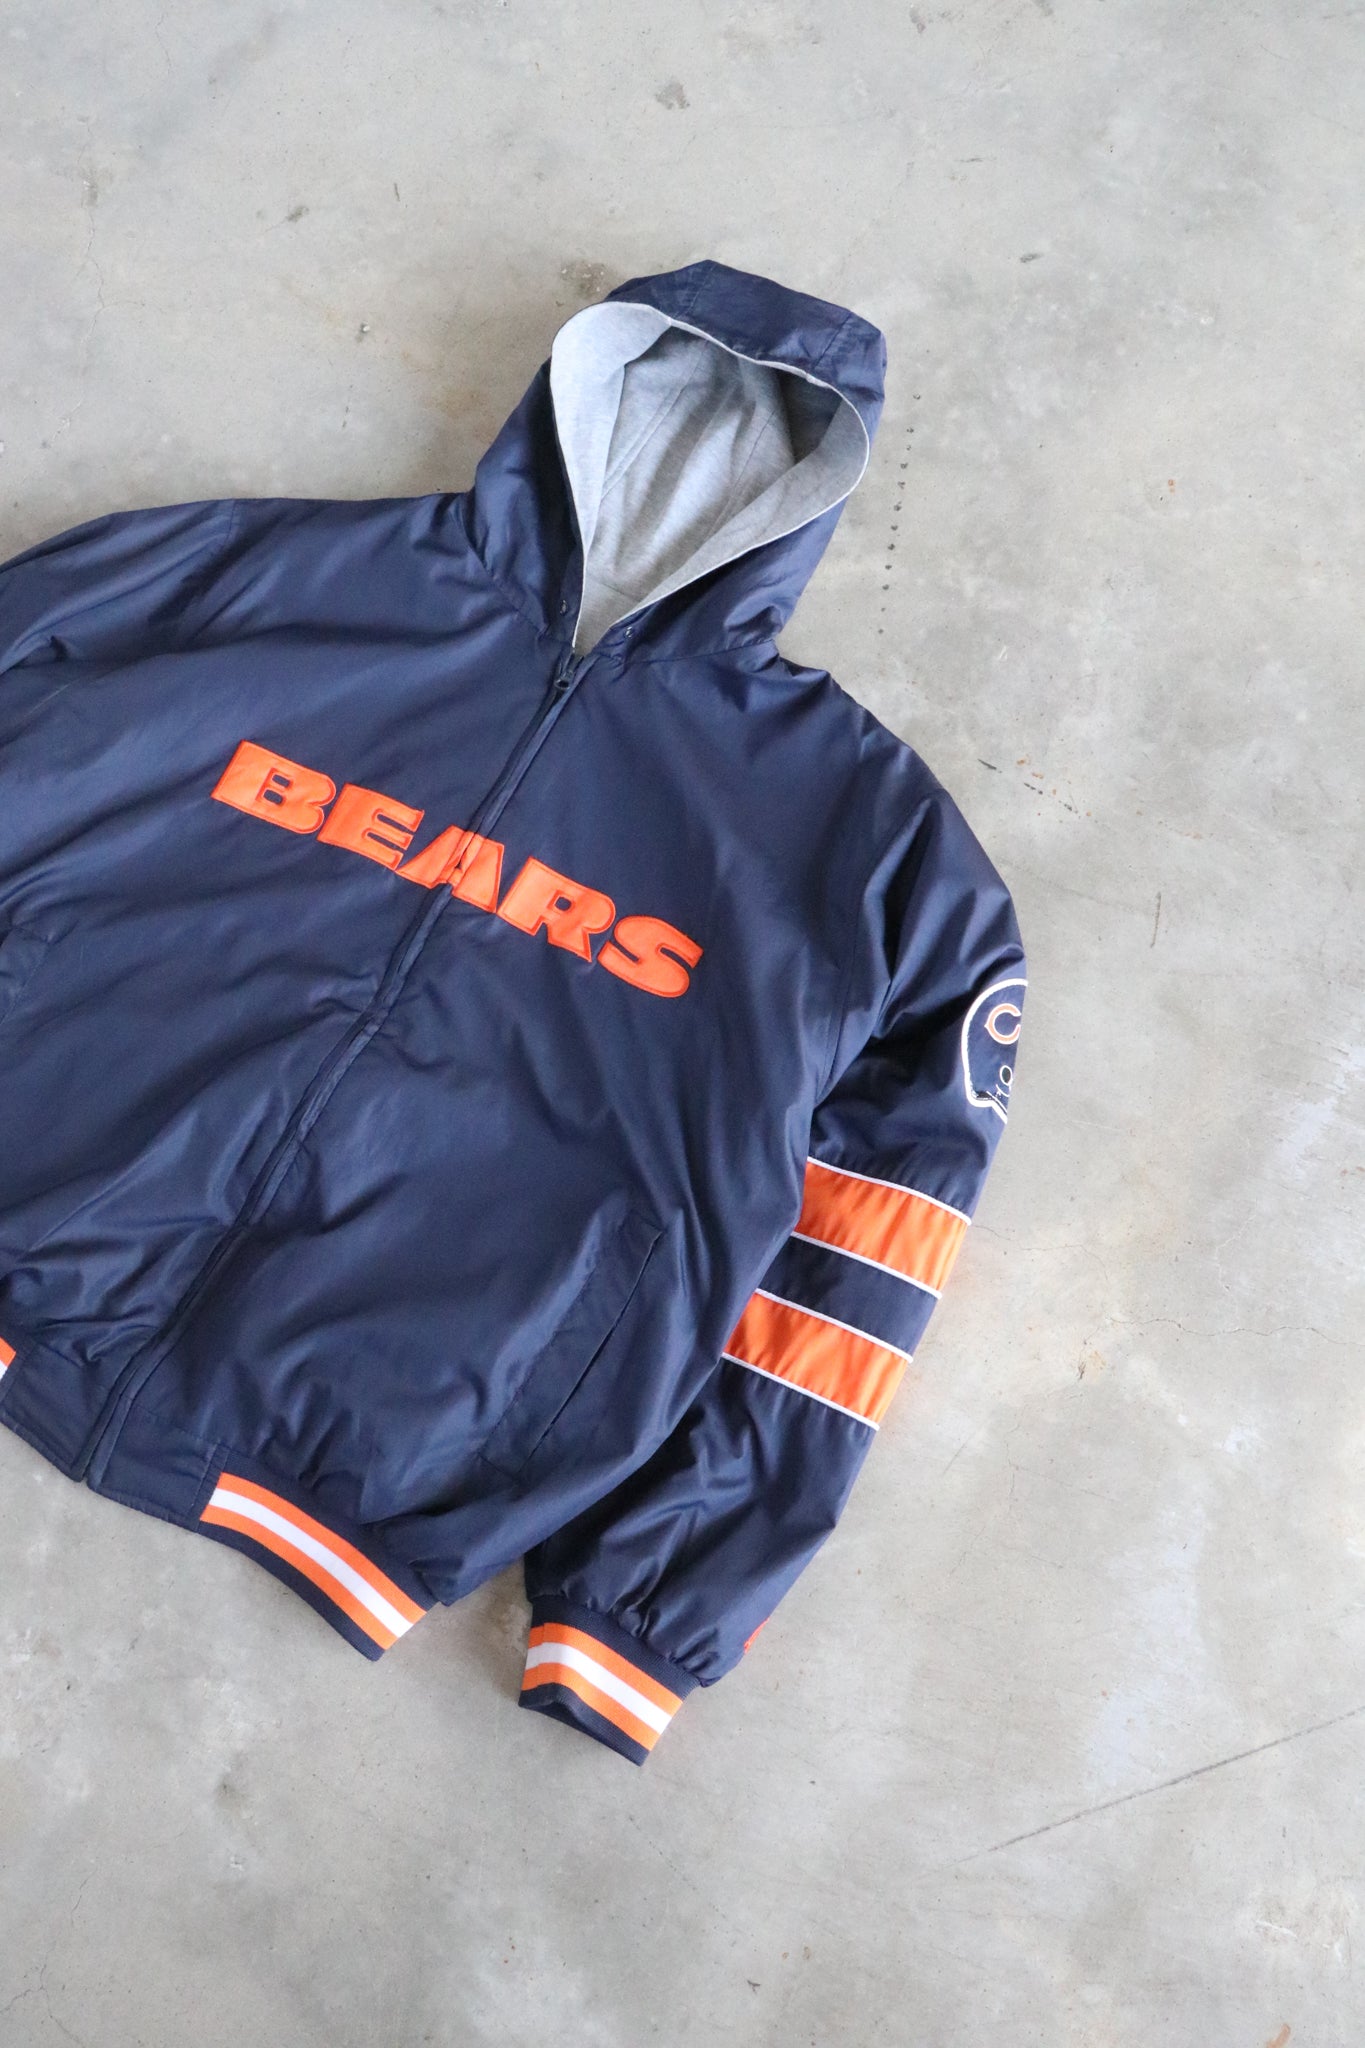 Vintage NFL Chicago Bears Reversible Jacket Large